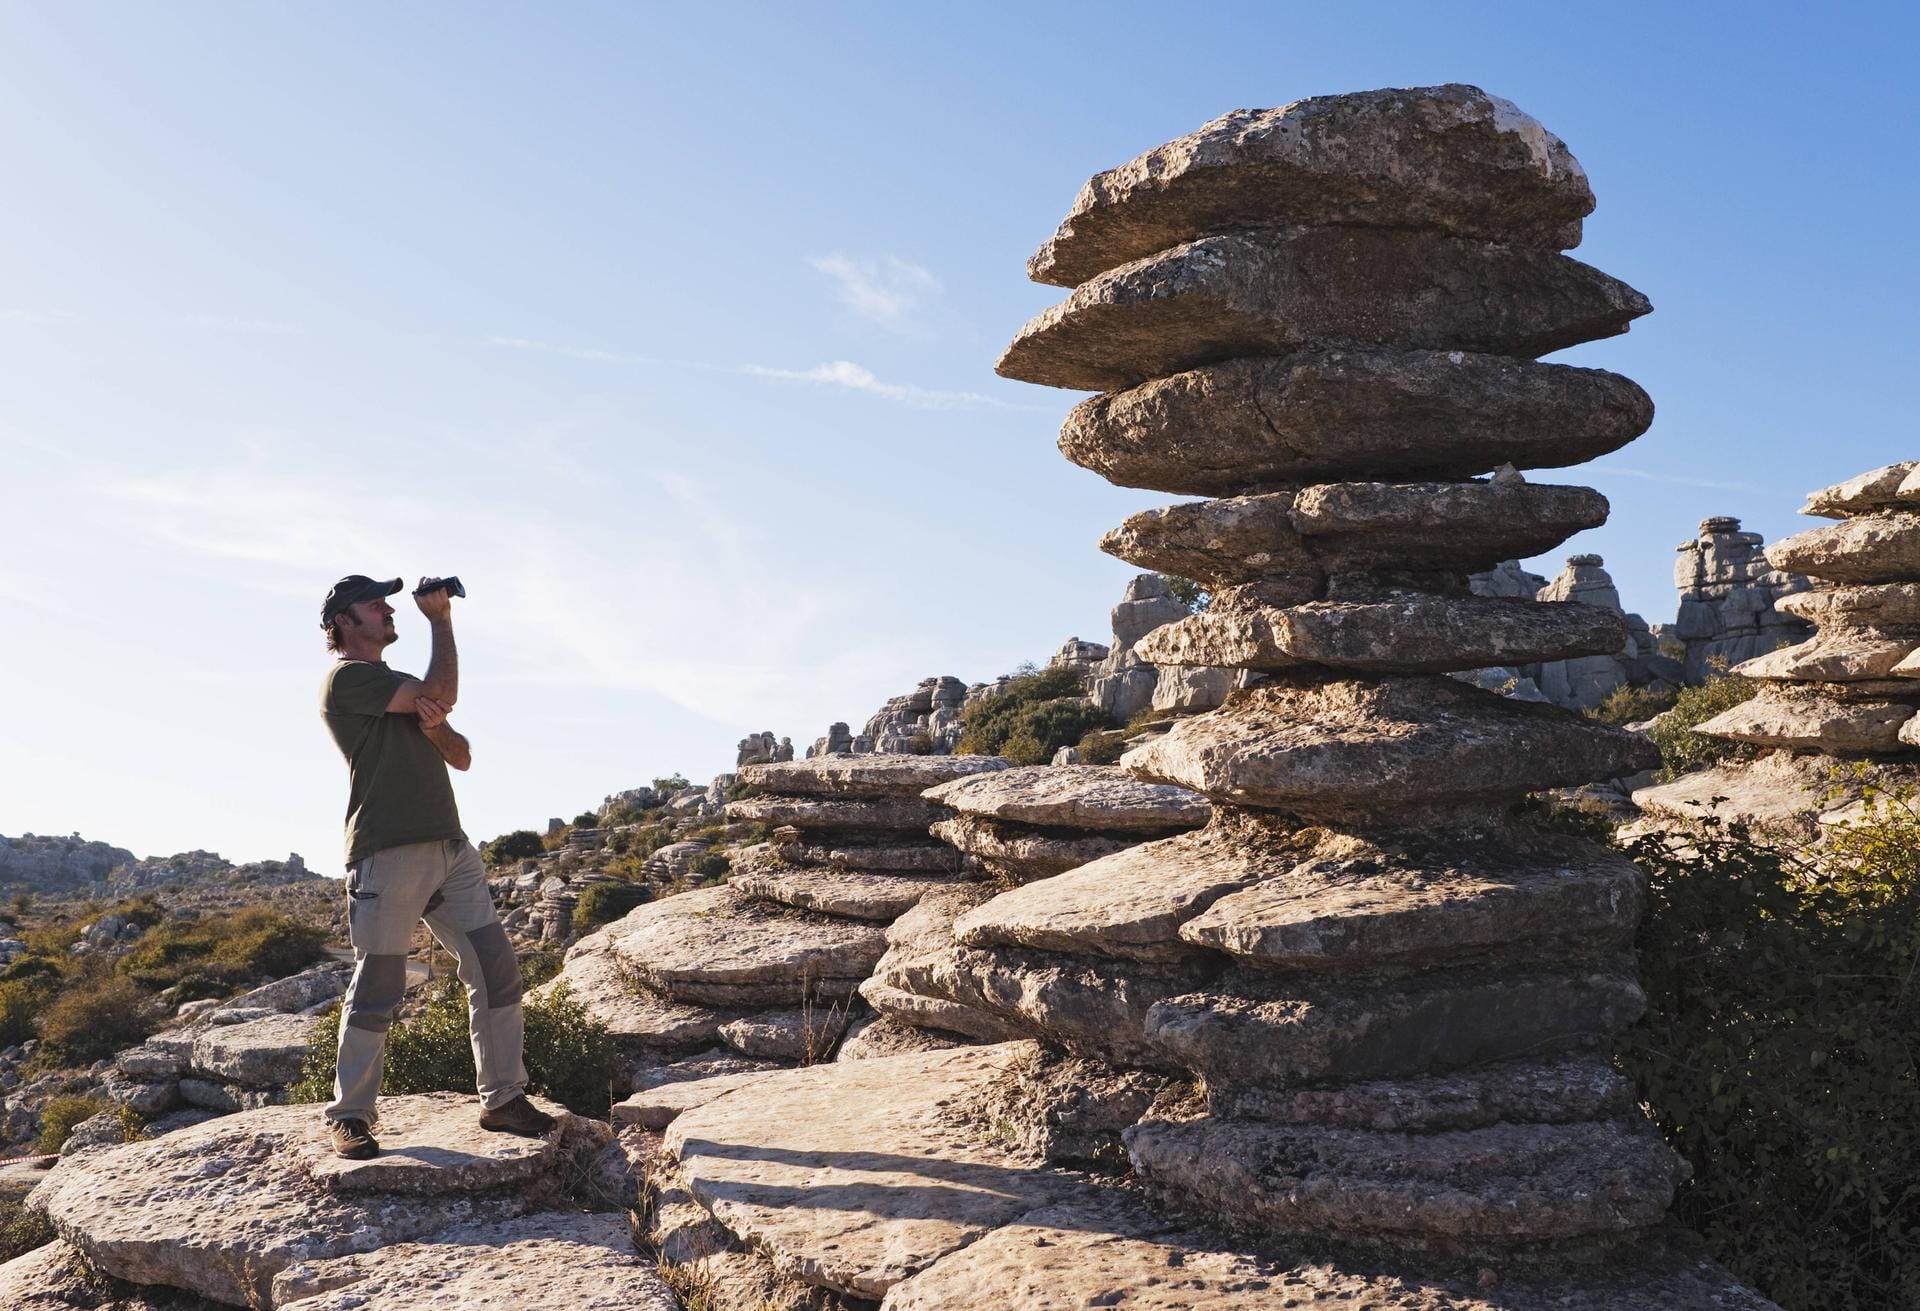 Das Naturschutzgebiet El Torcal im spanischen Andalusien beeindruckt mit außergewöhnlichen Karstformationen. Darunter auch die Karstsäule aus Felsplatten, als hätte sie jemand aufeinander gestapelt.